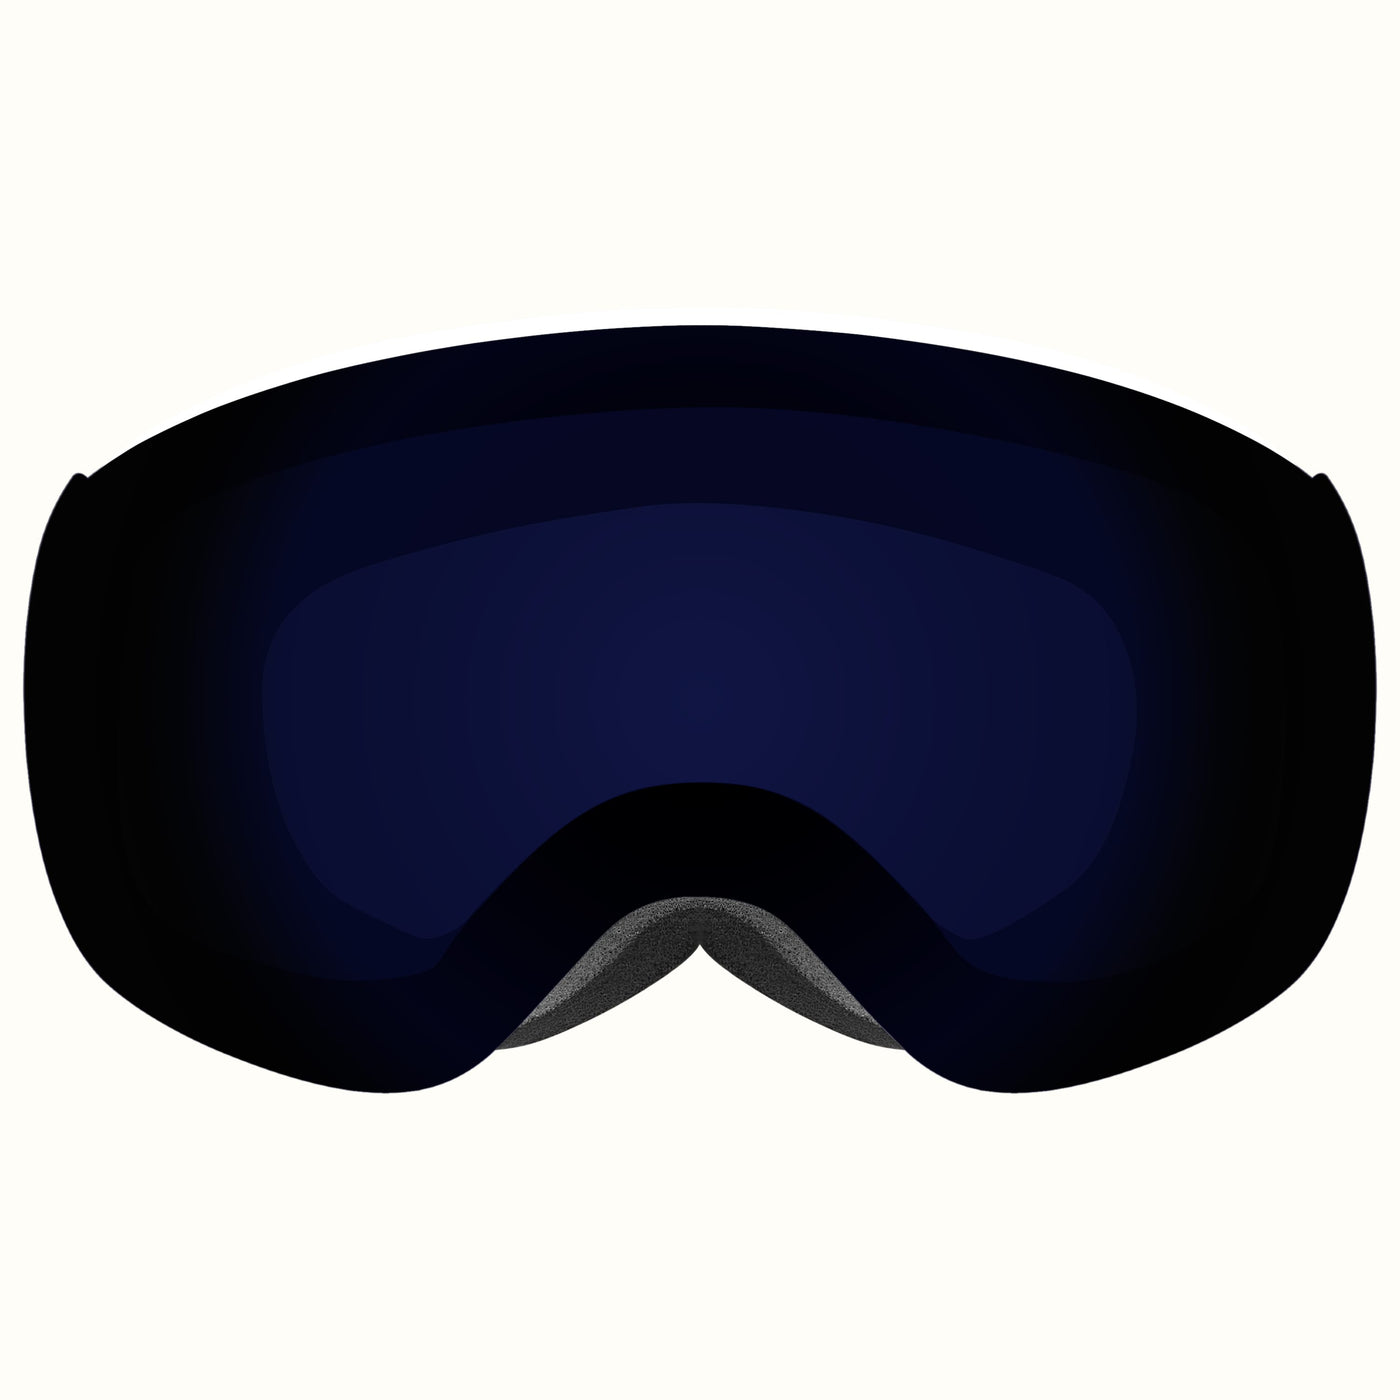 Dipper Plus Kids' Ski & Snowboard Goggles | Matte White and Sapphire